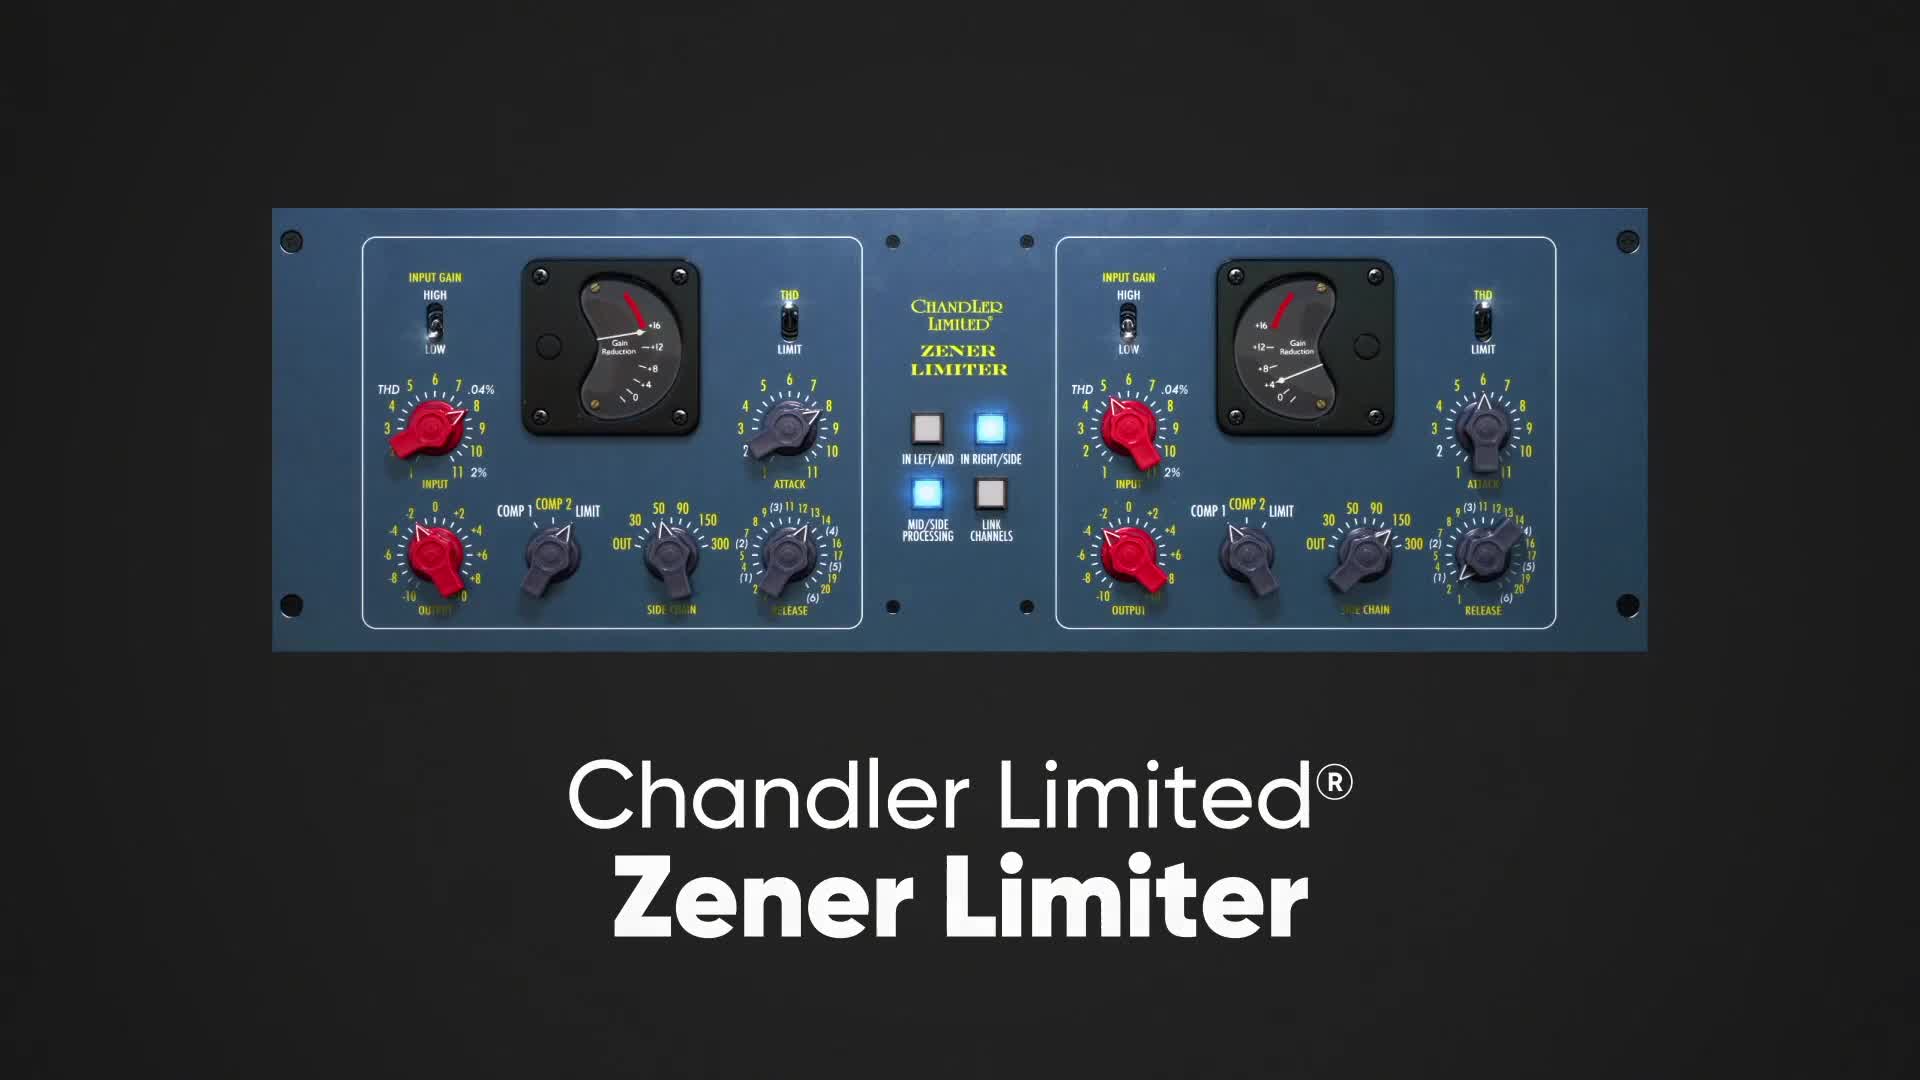 Chandler Limited Zener Limiter